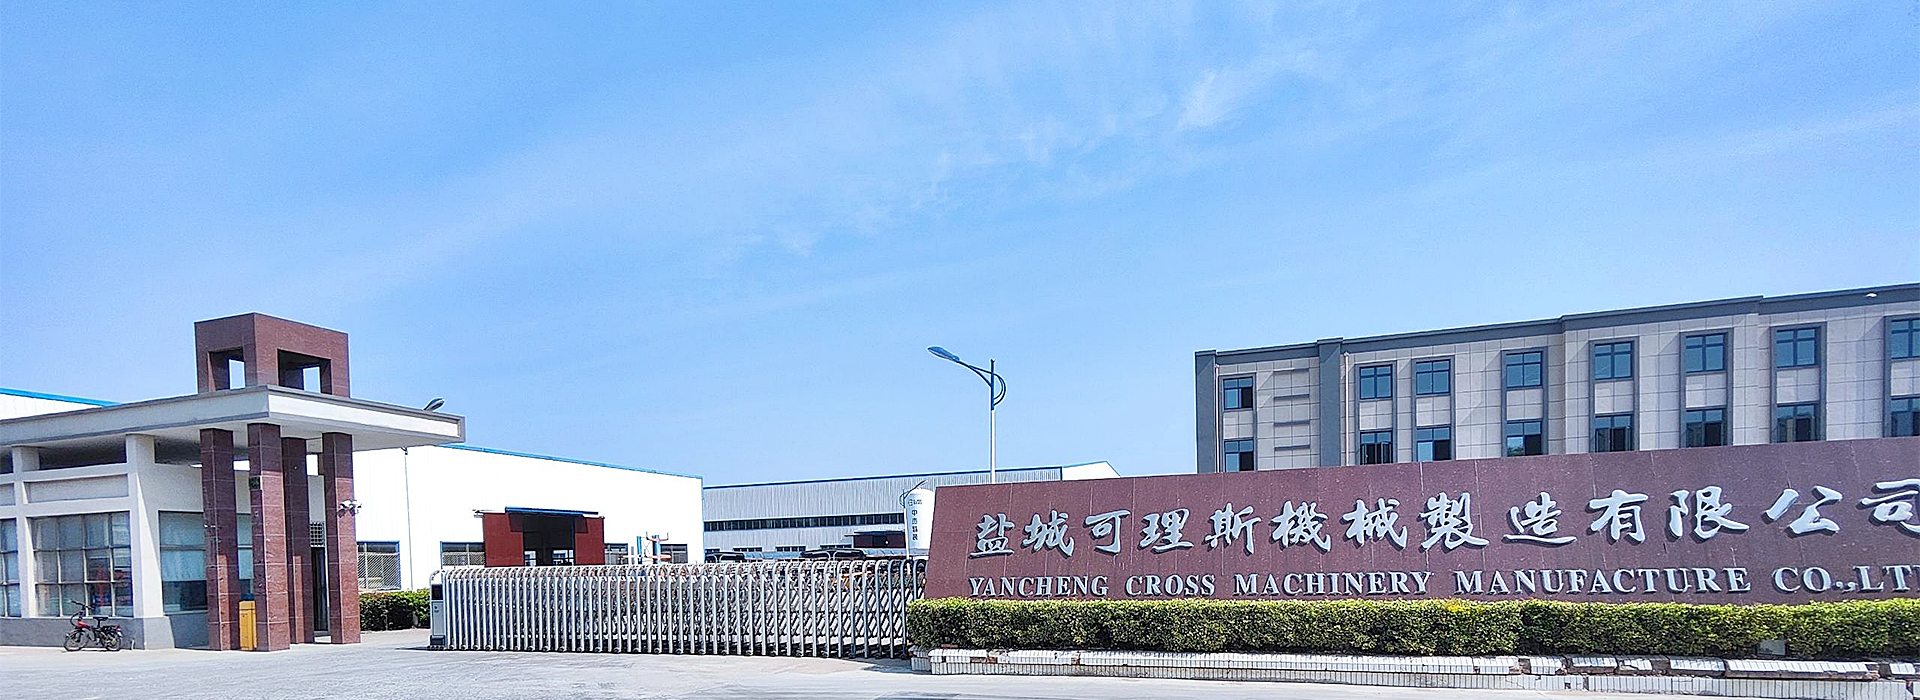 Yancheng Cross machinery manufacture Co., Ltd